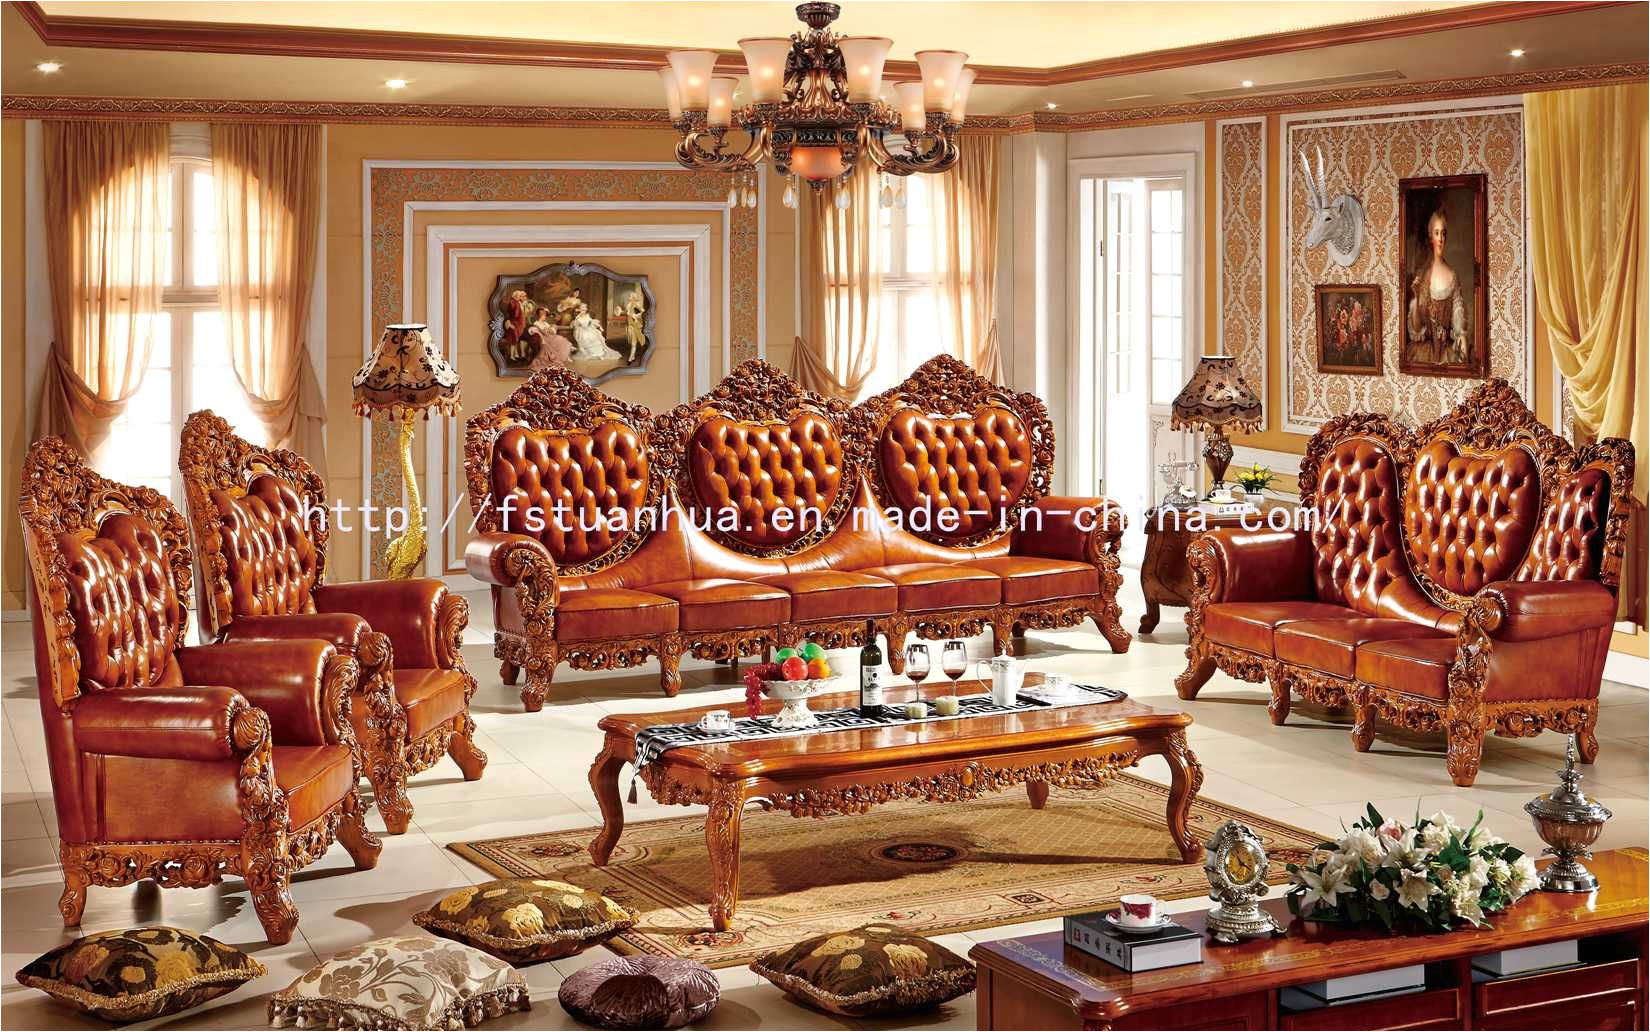 foto de madera europea de lujo que talla los muebles de lujo del sofa de la sala de estar th528 en es made in china com